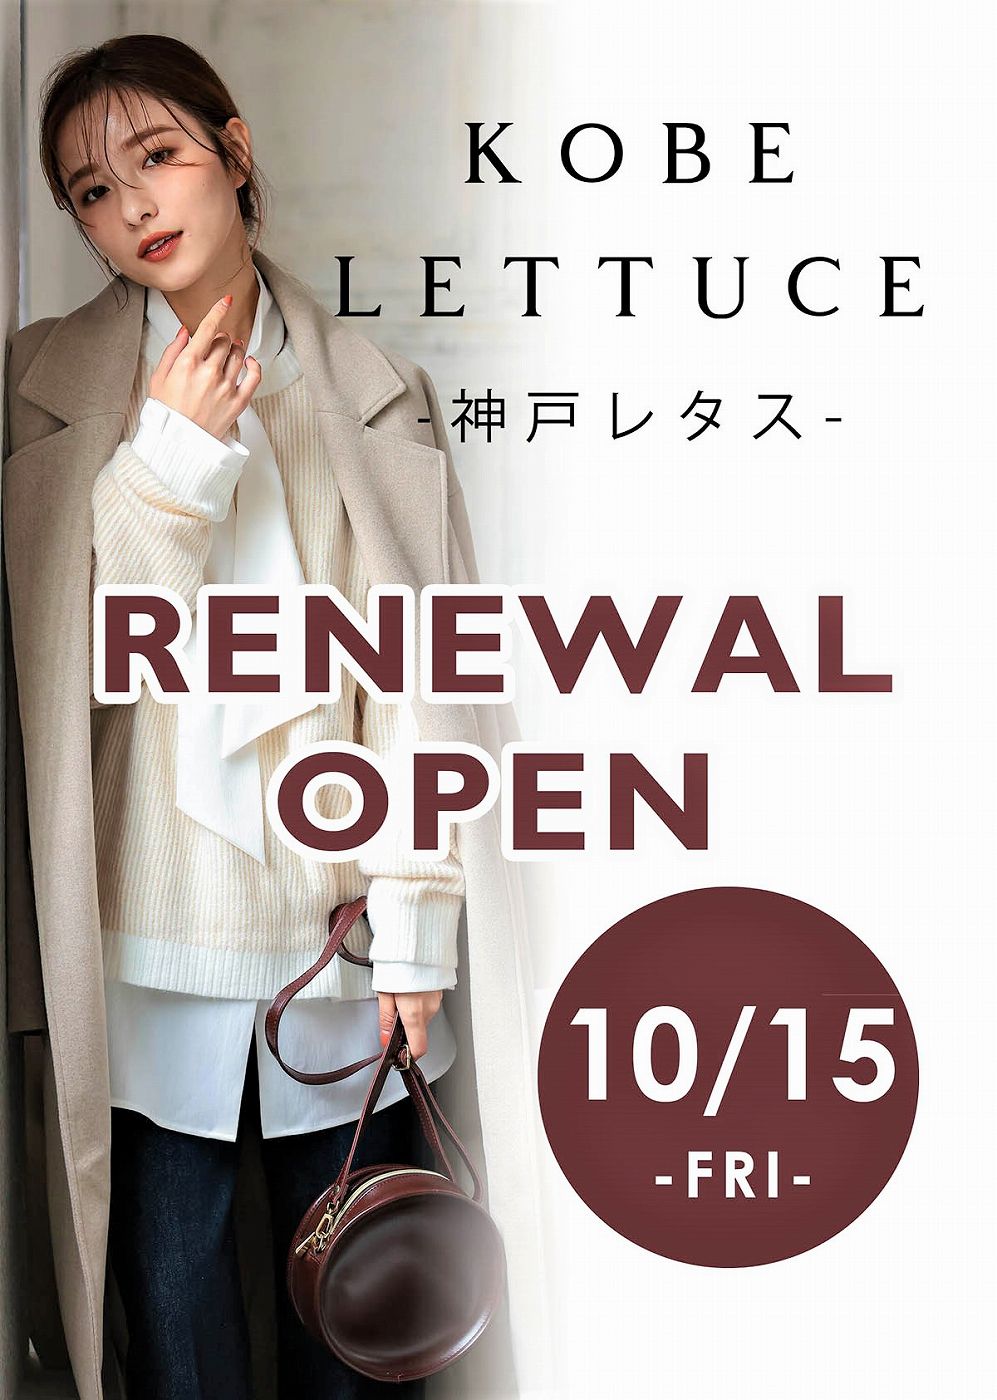 レタス 店舗 神戸 JR三ノ宮駅「中央改札」近くに『KOBE LETTUCE（神戸レタス）』が移転オープンするみたい。24日までオープニングセールも